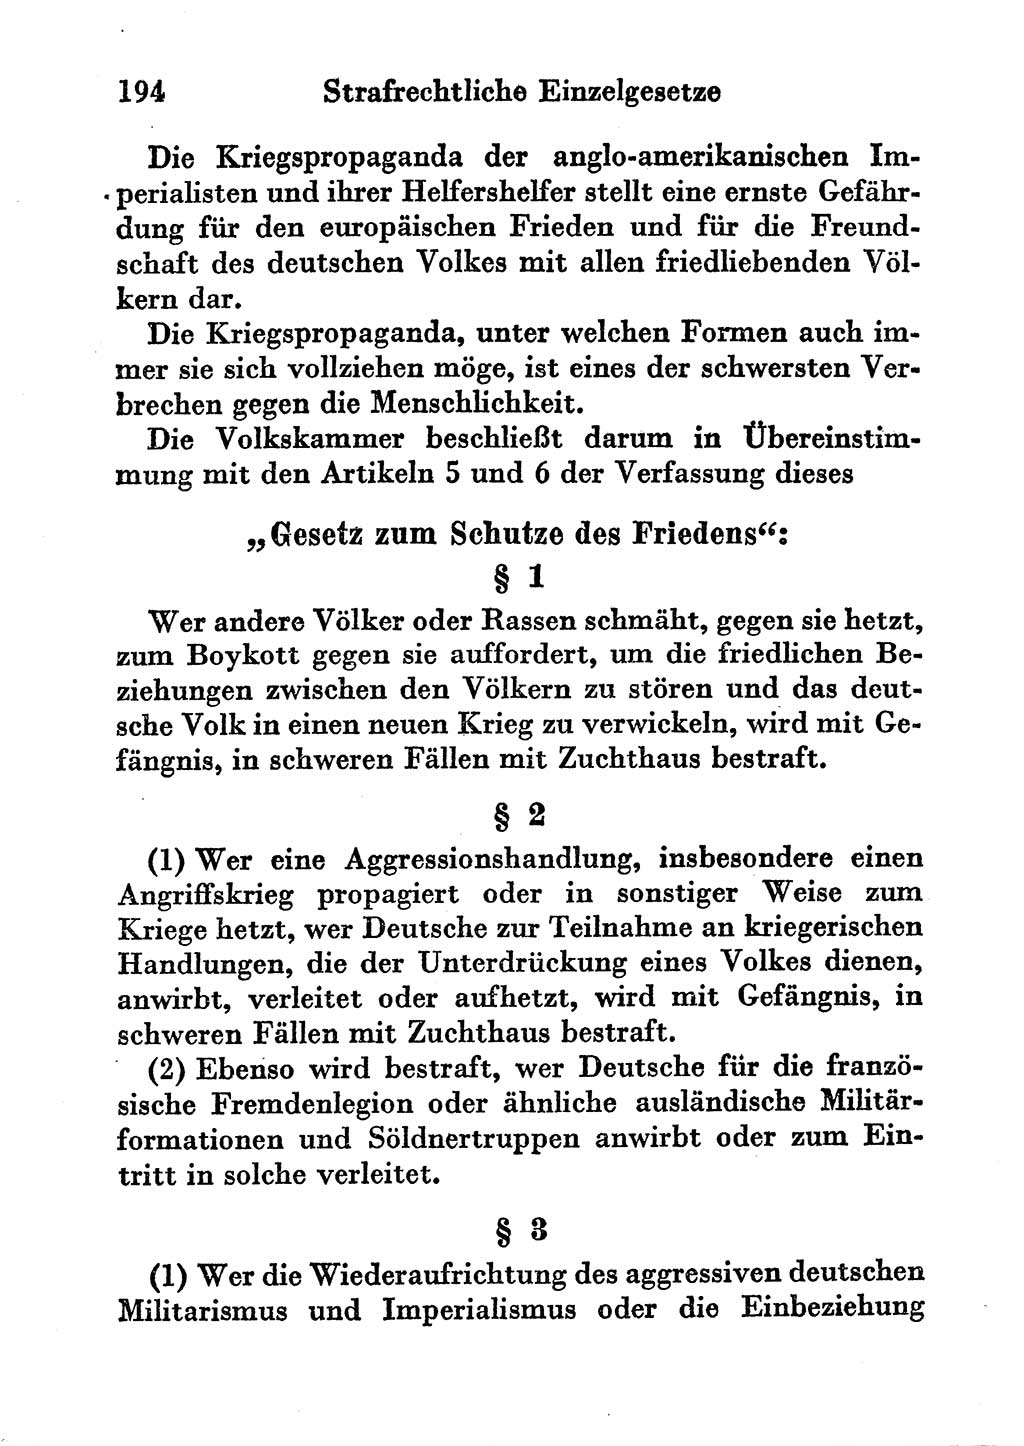 Strafgesetzbuch (StGB) und andere Strafgesetze [Deutsche Demokratische Republik (DDR)] 1956, Seite 194 (StGB Strafges. DDR 1956, S. 194)